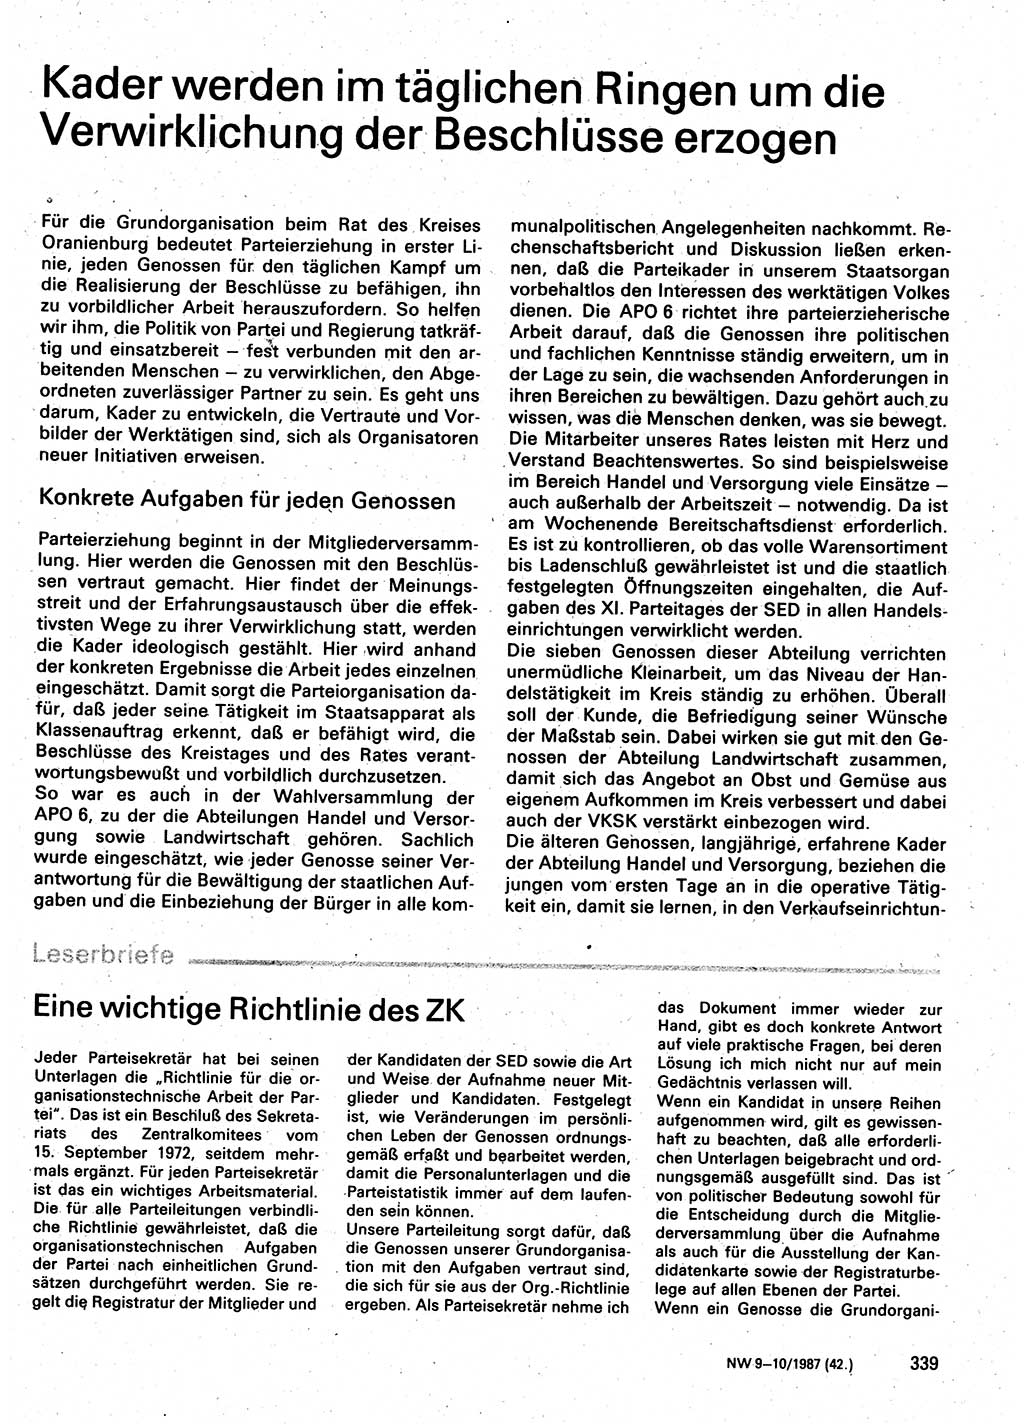 Neuer Weg (NW), Organ des Zentralkomitees (ZK) der SED (Sozialistische Einheitspartei Deutschlands) für Fragen des Parteilebens, 42. Jahrgang [Deutsche Demokratische Republik (DDR)] 1987, Seite 339 (NW ZK SED DDR 1987, S. 339)